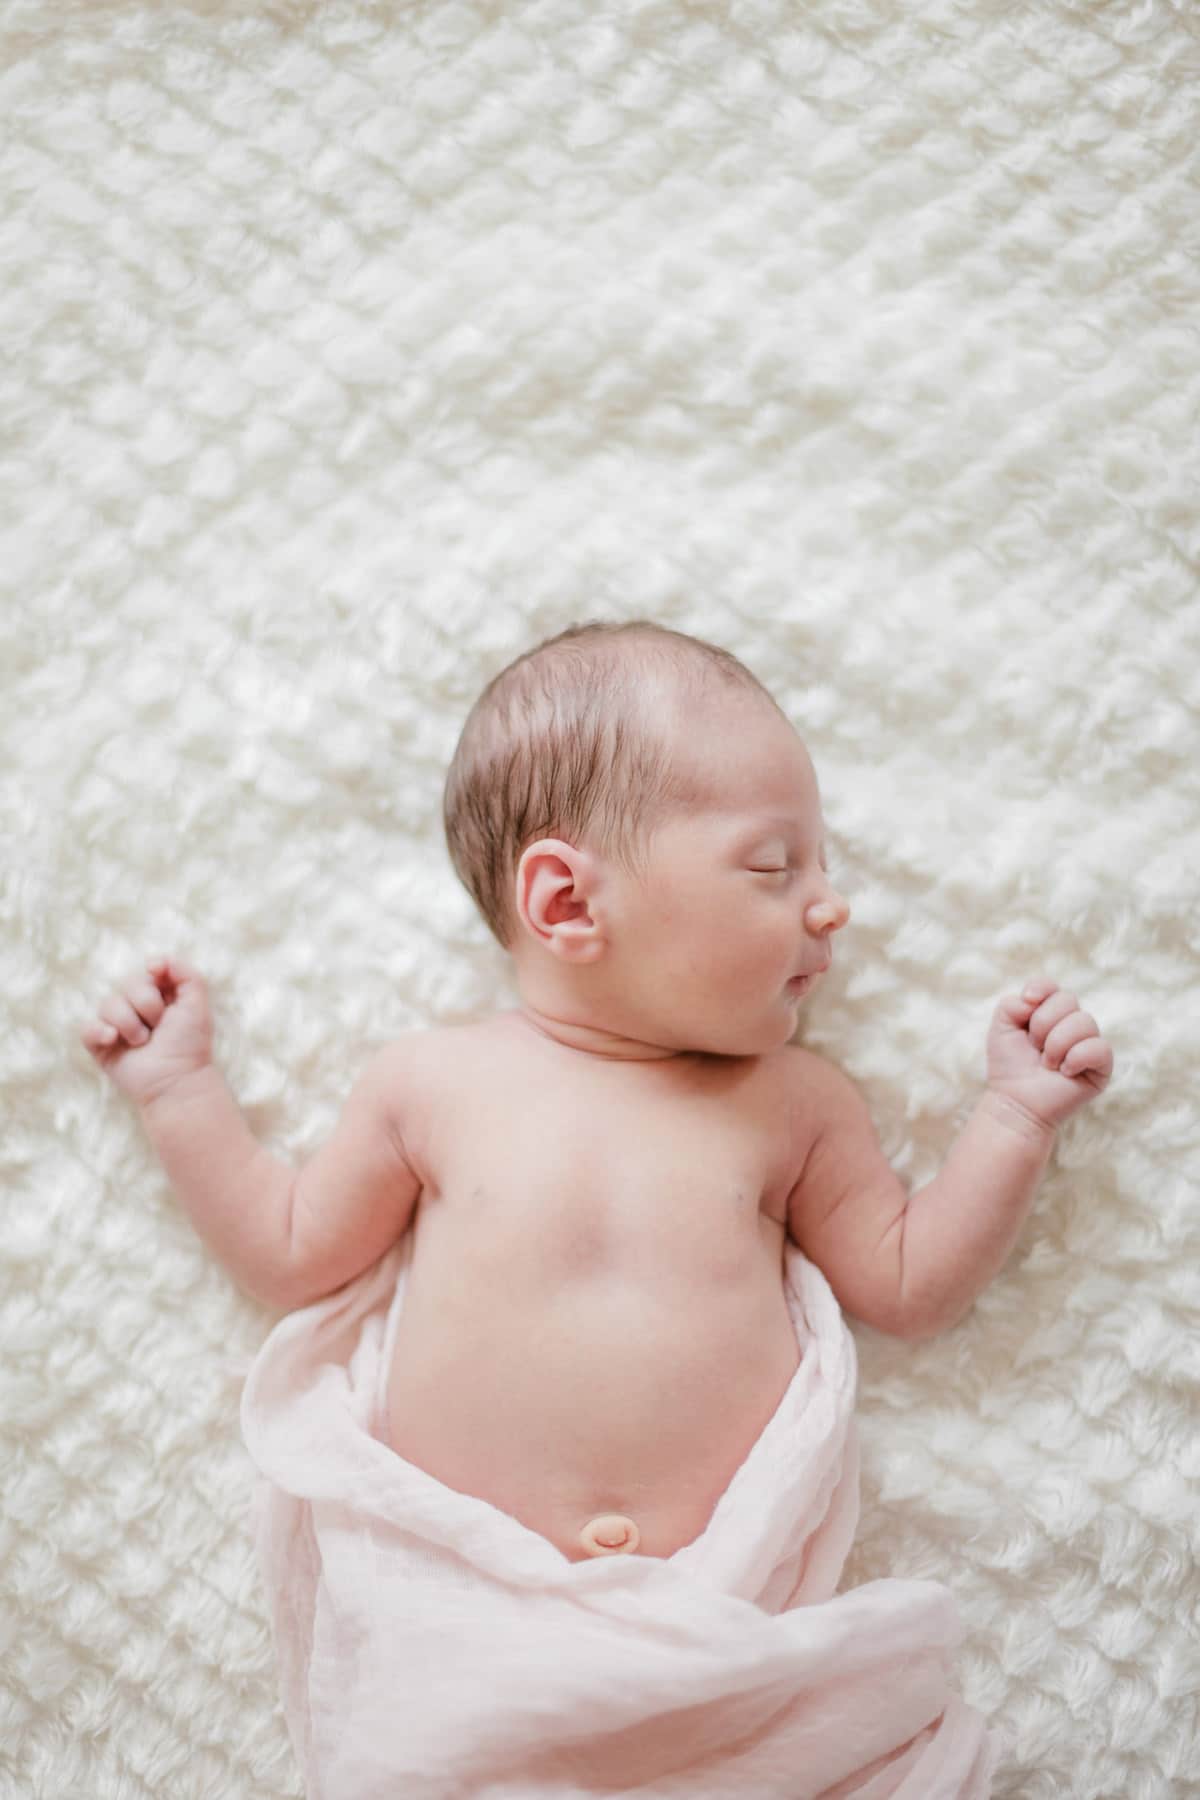 photographe bébé nouveau-né maternité bordeaux séance photo maison à domicile lifestyle fineart francais sarah miramon carla 08